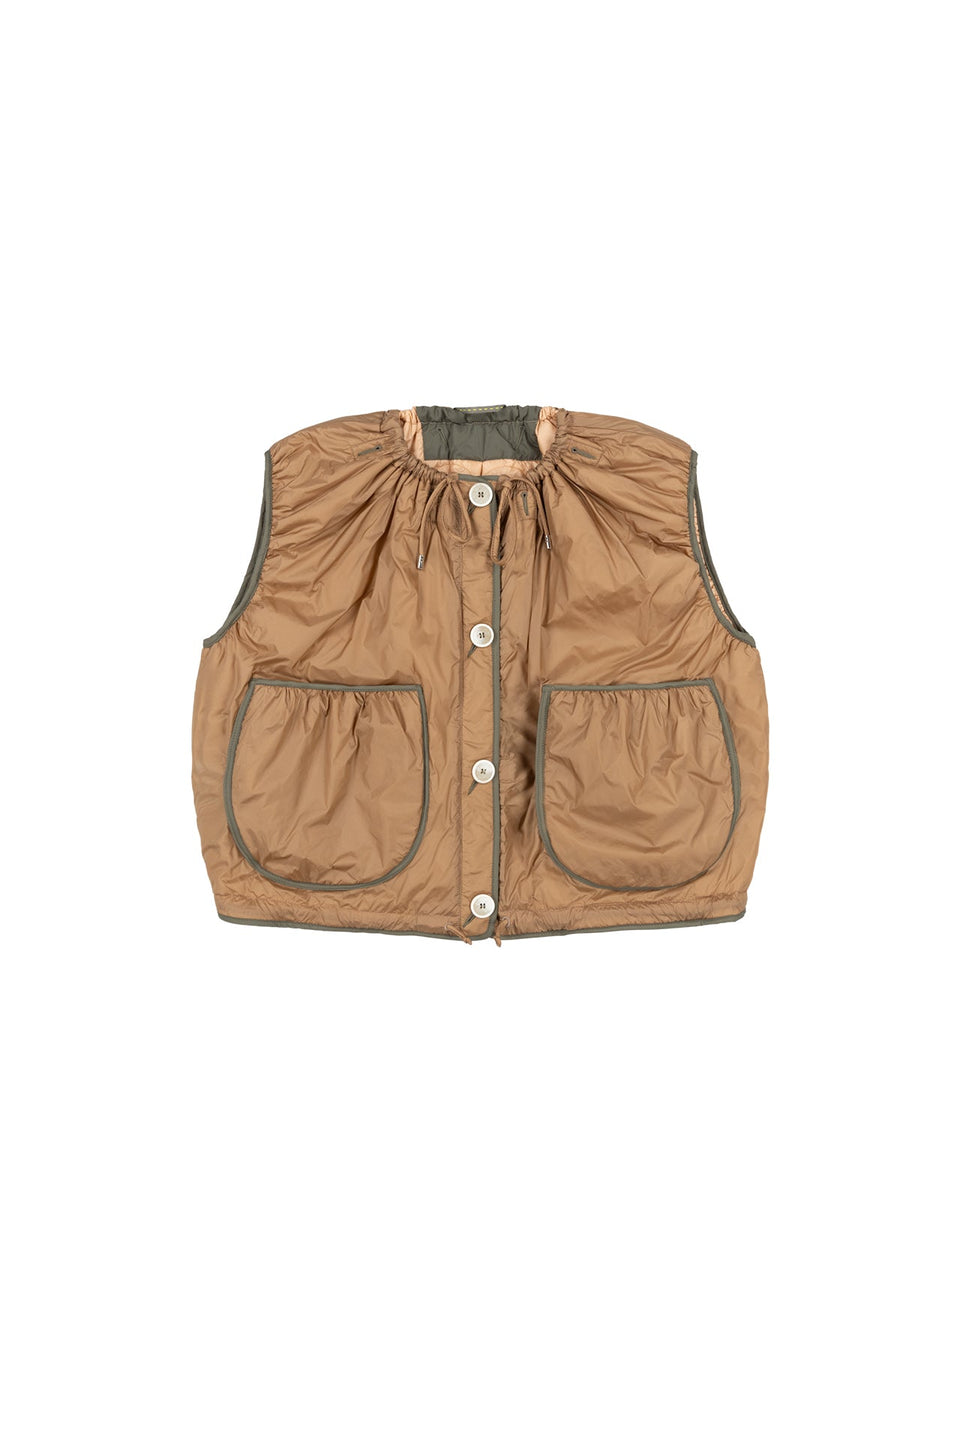 Parachute Quilt Vest - Mocha Brown / Soft Peach (listing page thumbnail)